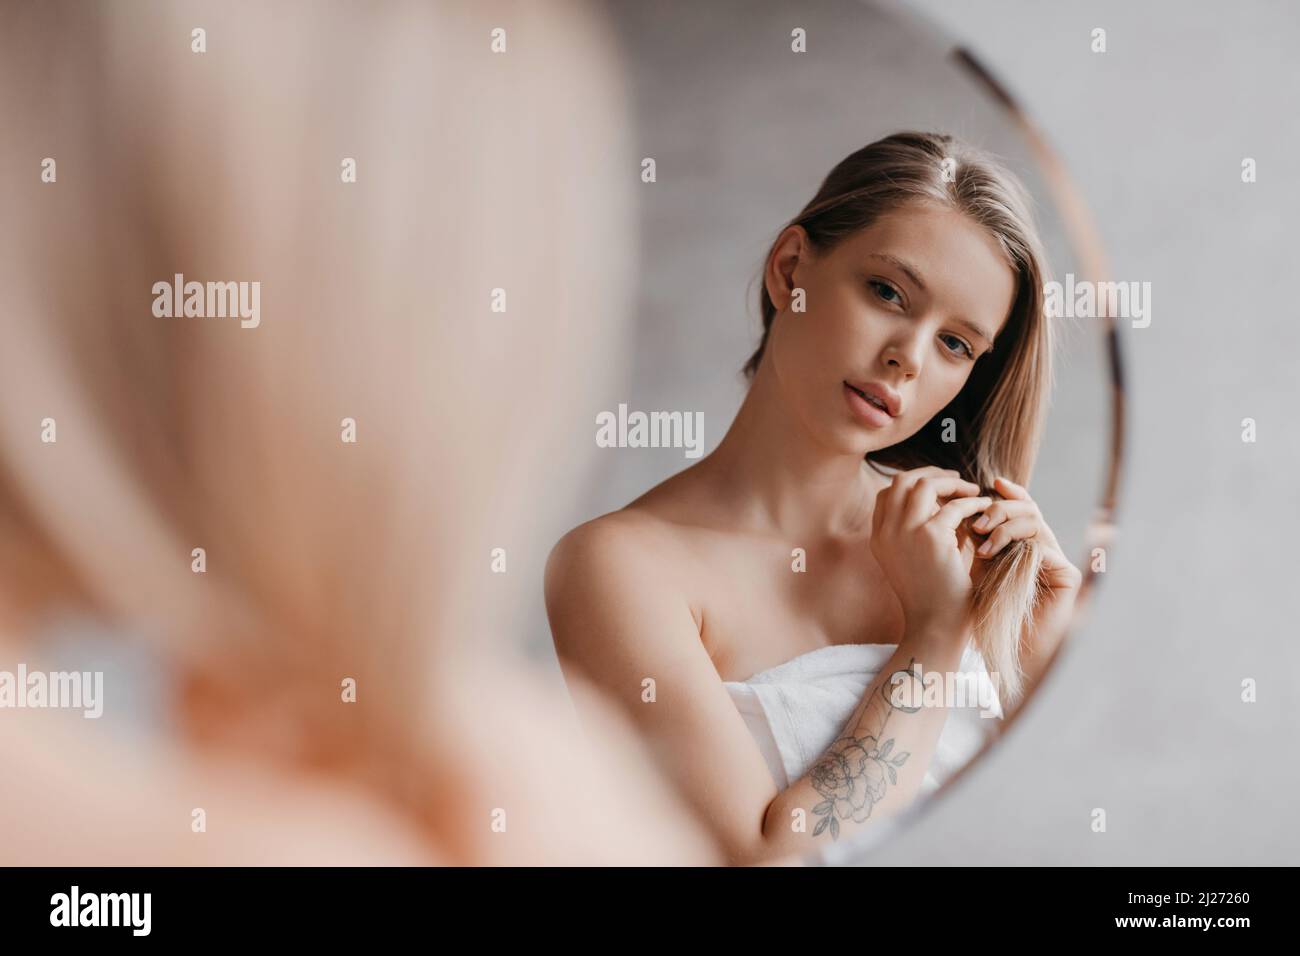 Natürliche Schönheit. Die hübsche junge Dame berührte ihr weiches Haar, stand in der Nähe des Spiegels im Badezimmer und schaute auf ihre Spiegelung Stockfoto